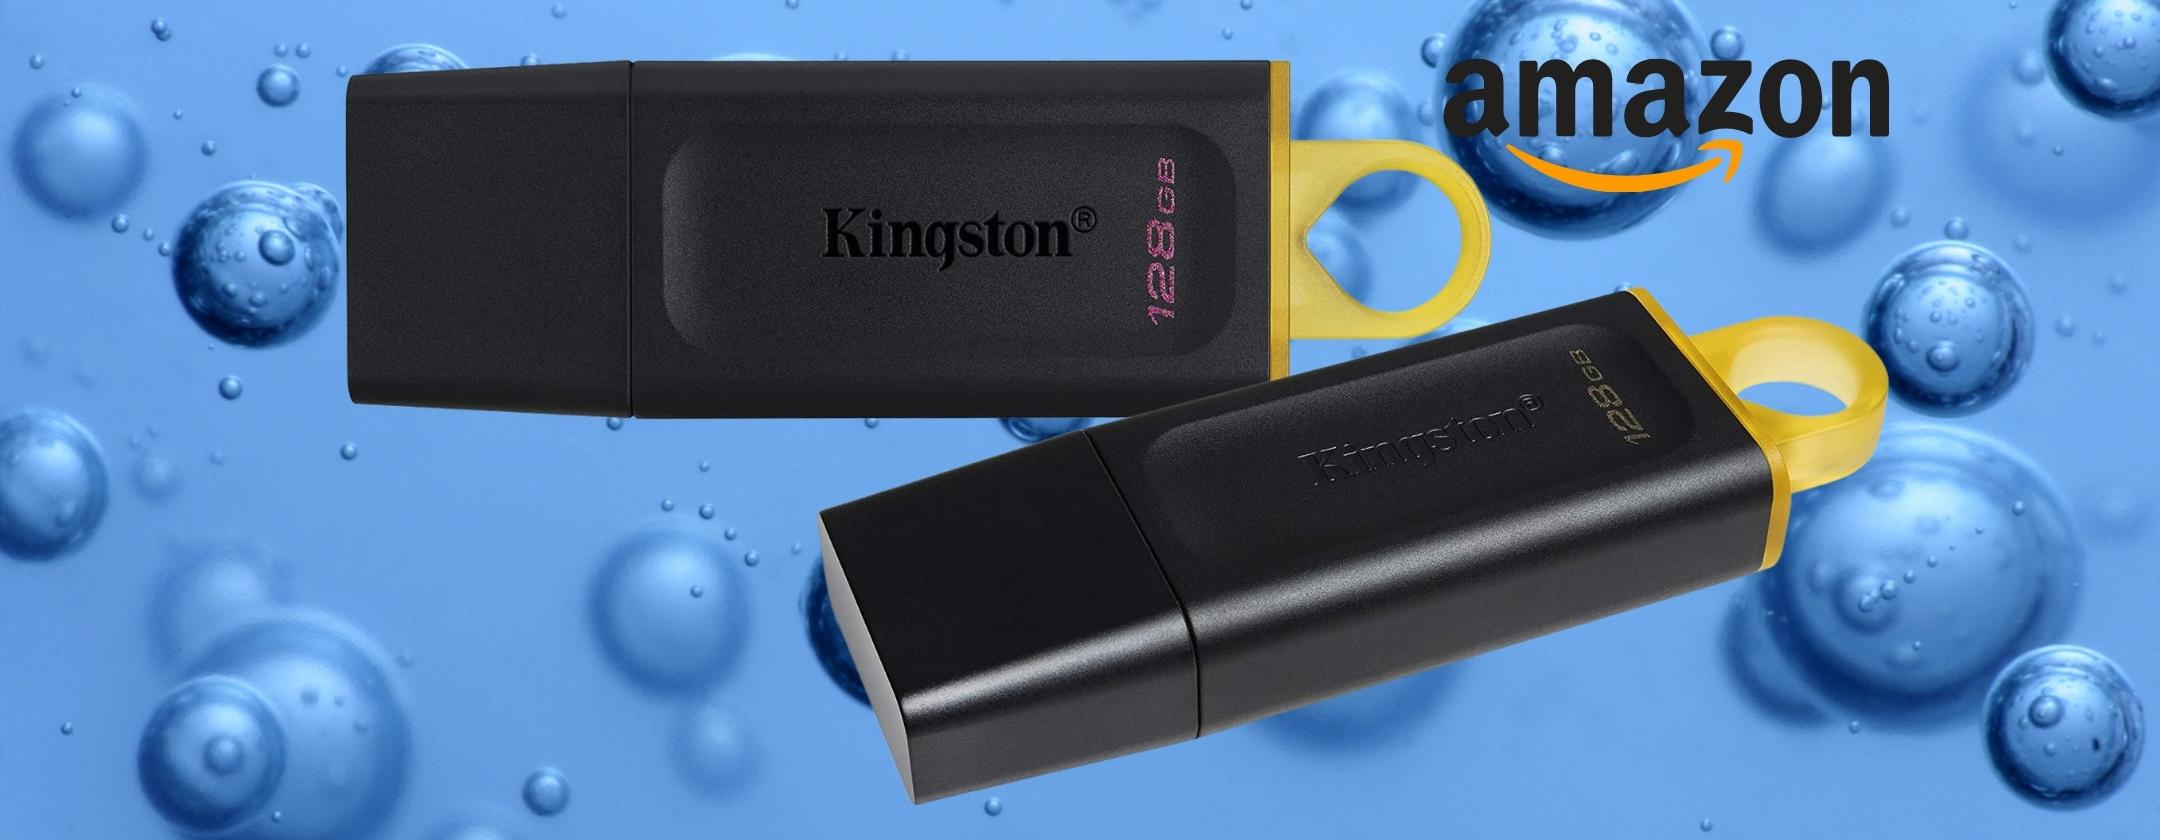 Chiavetta USB Kingston da 128GB: praticamente REGALATA su Amazon